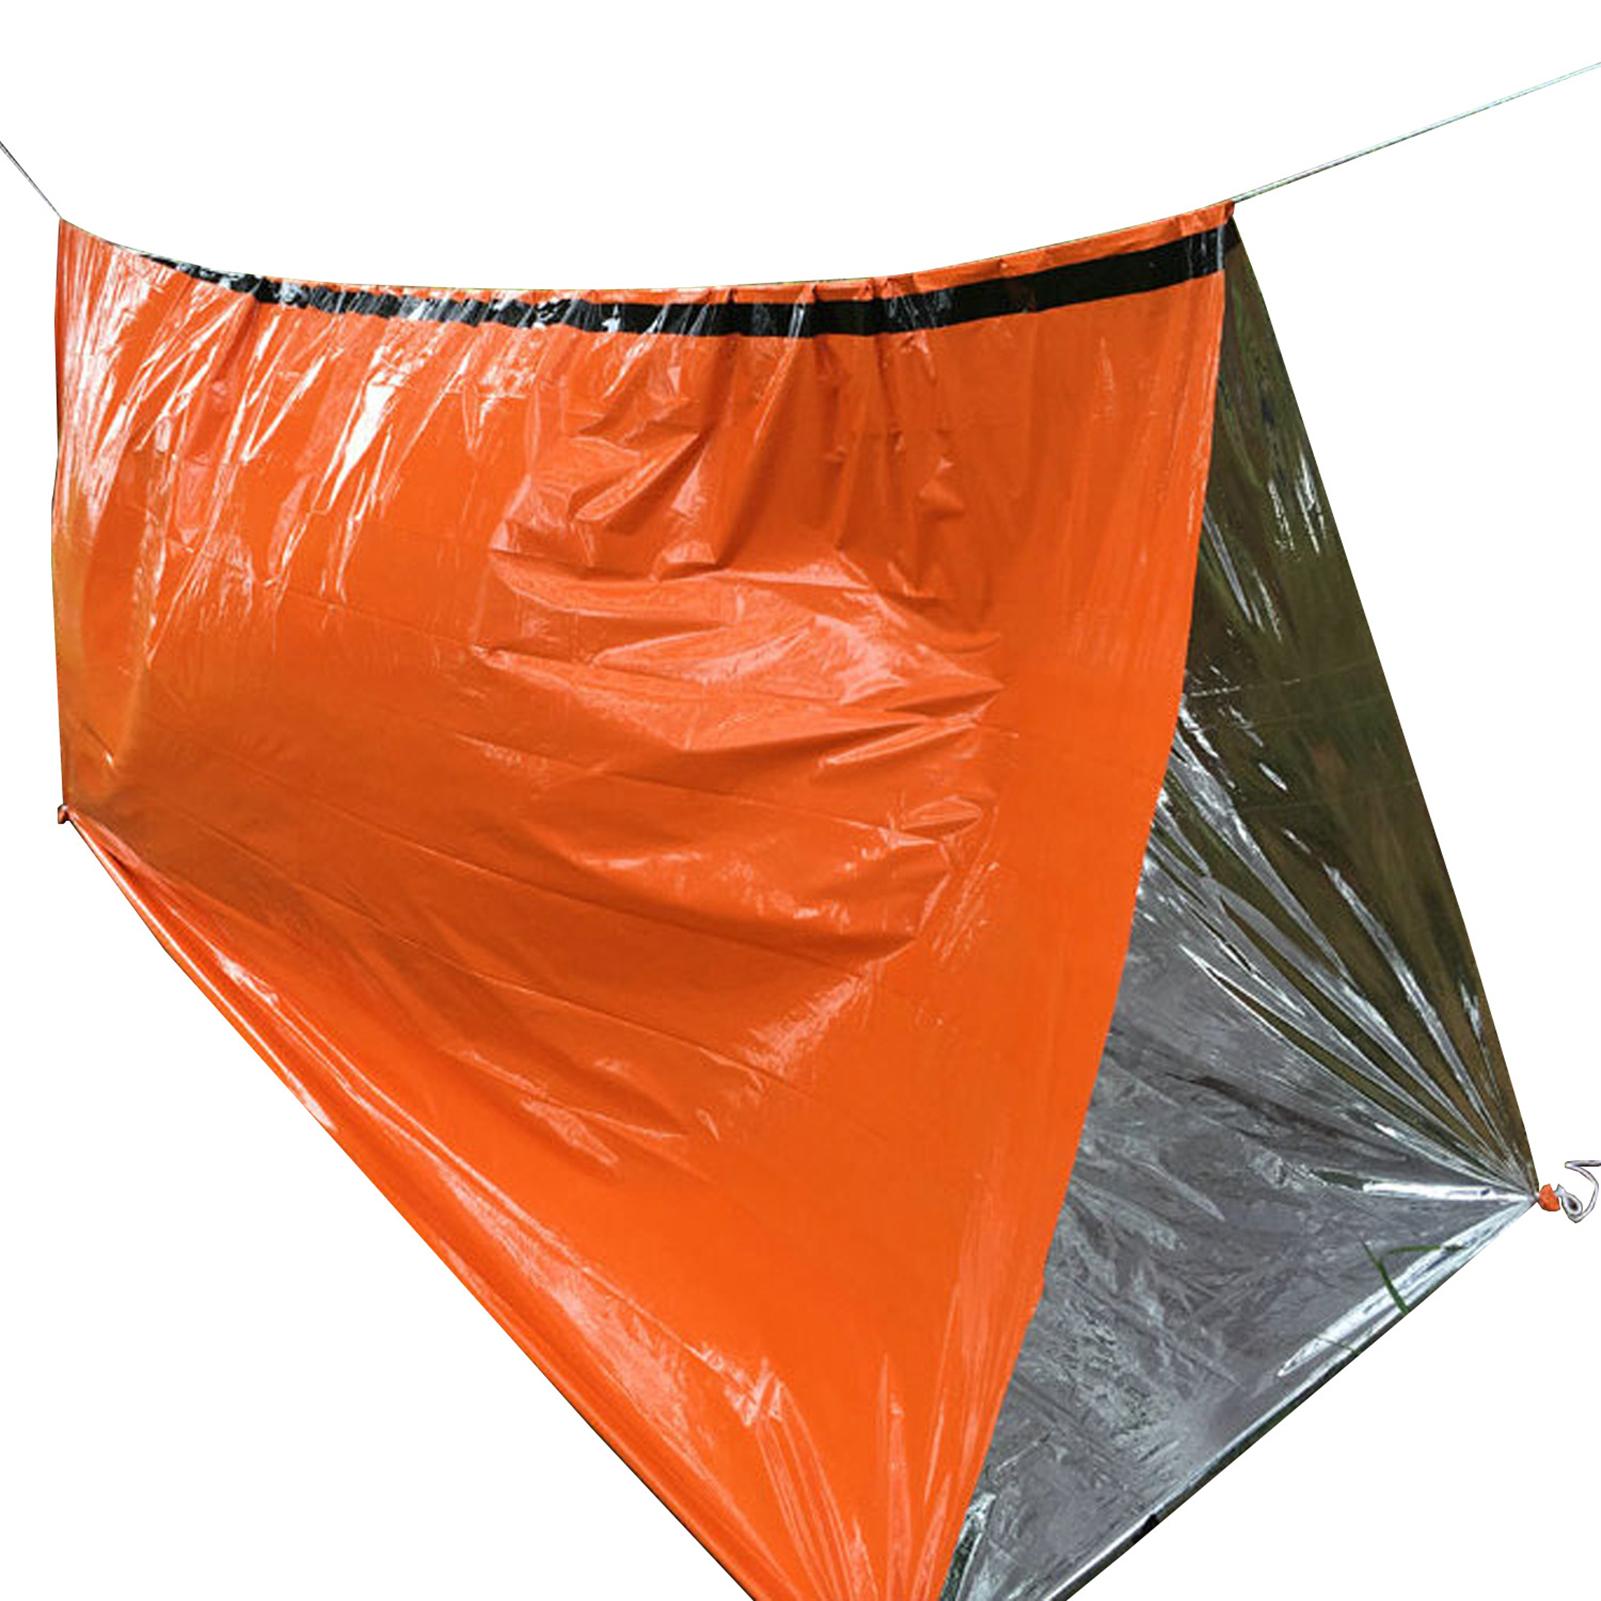 Ehbo Slaapzak Tent Voor Outdoor Camping Wandelen Zon Pe Film Warm Reflecterende Ultralight Slaapzak